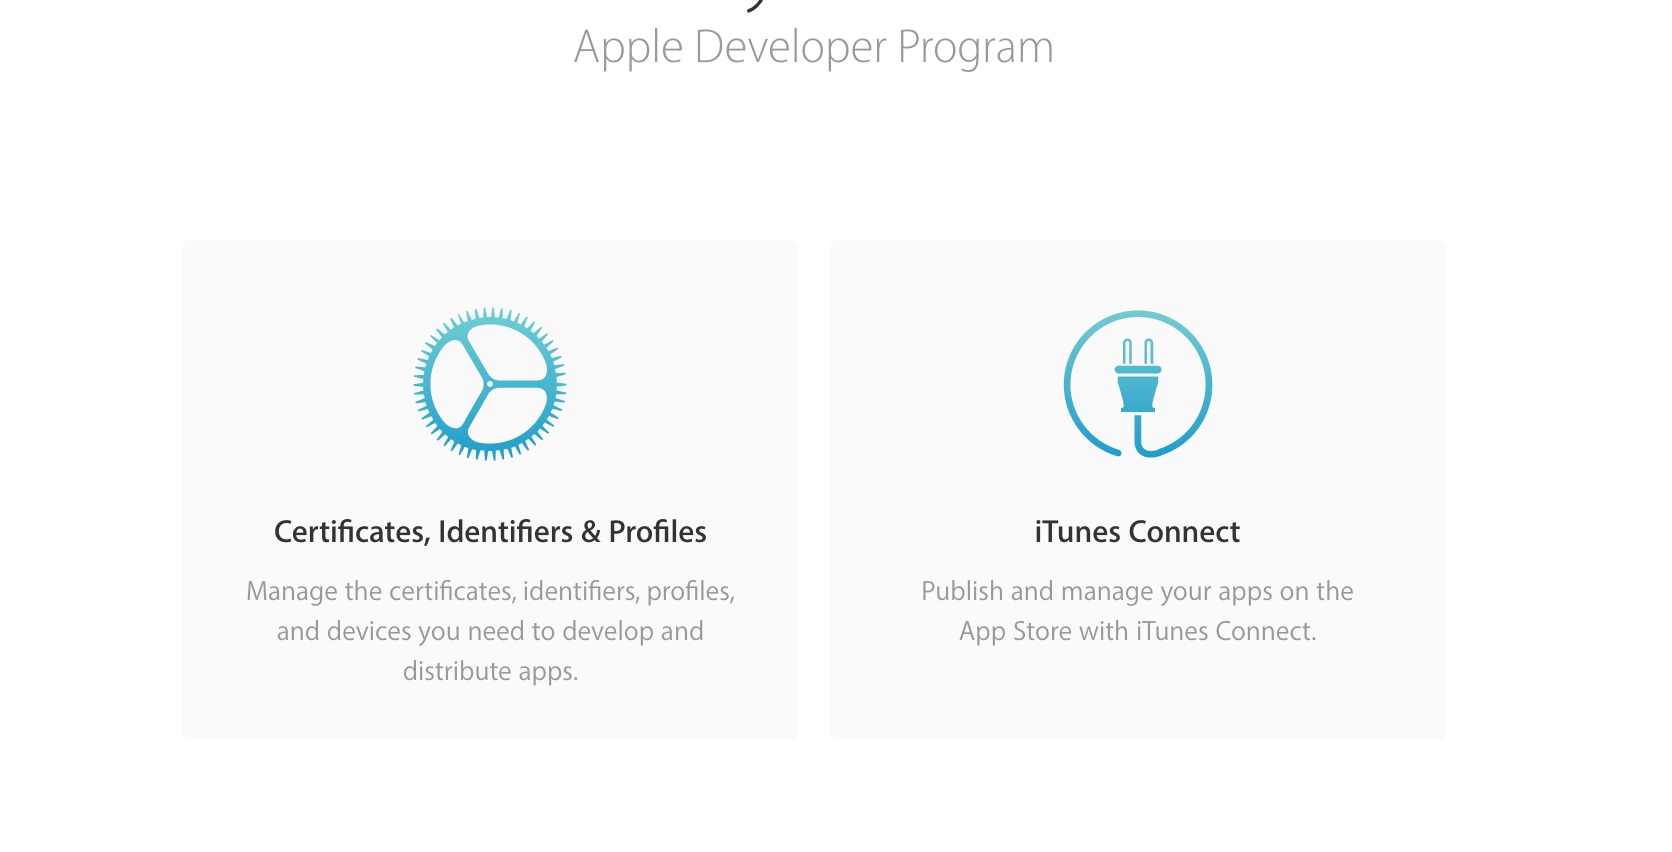 Apple Developer Center